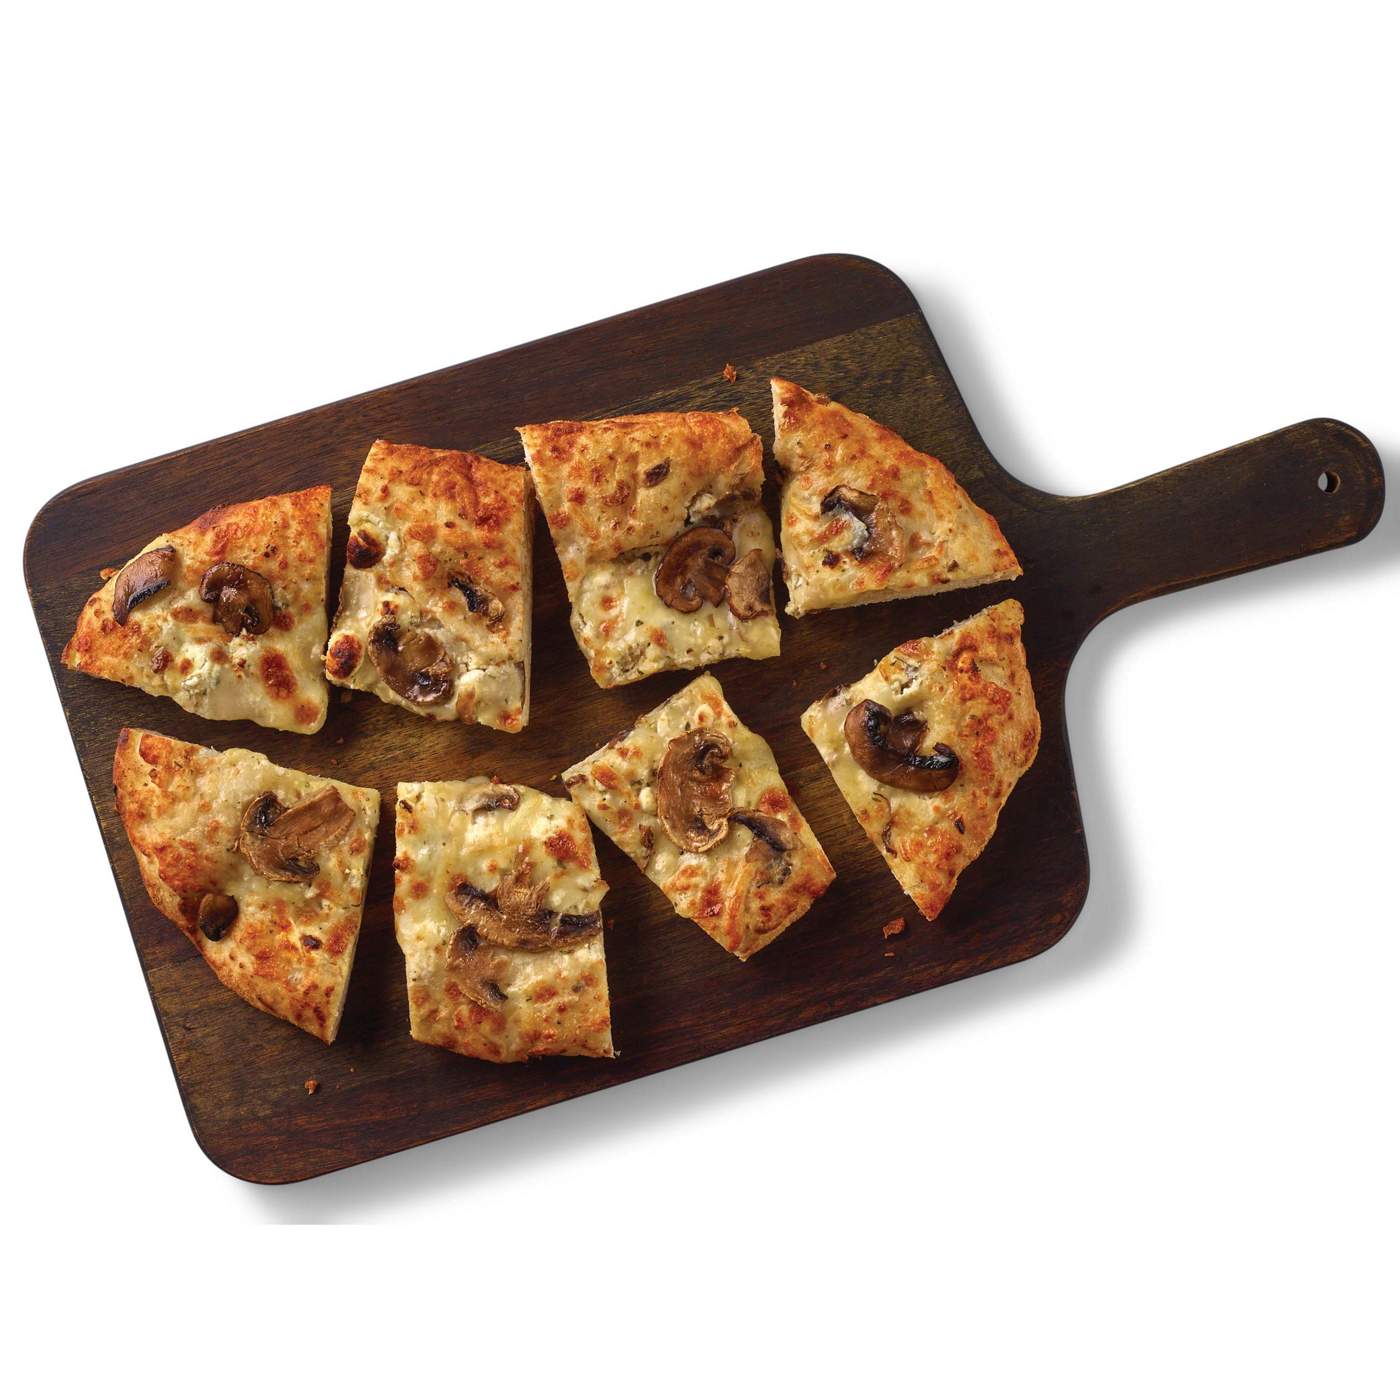 H-E-B Deli Artisan Focaccia Pizza - Mushroom, Mozzarella & Goat Cheese; image 3 of 3